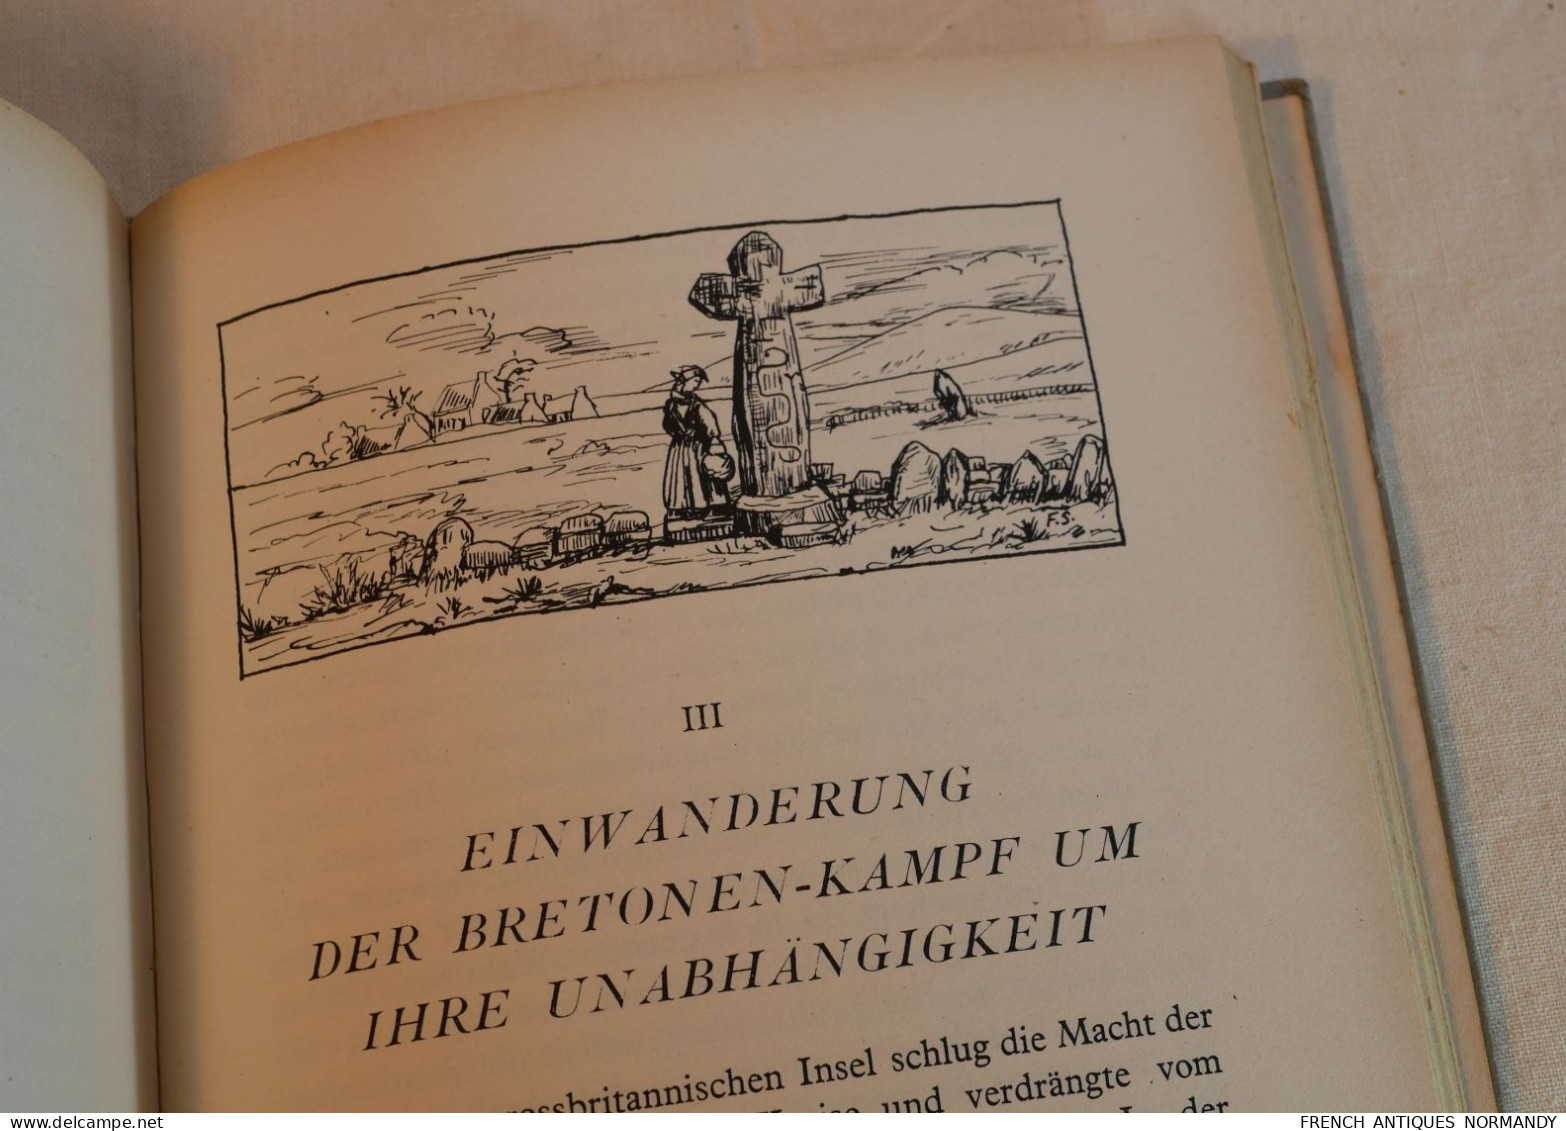 ARMÉE ALLEMANDE - livre DIE BRETAGNE allemand de 1943 avec cachet Marine  livre non politique de géographie et de voyage